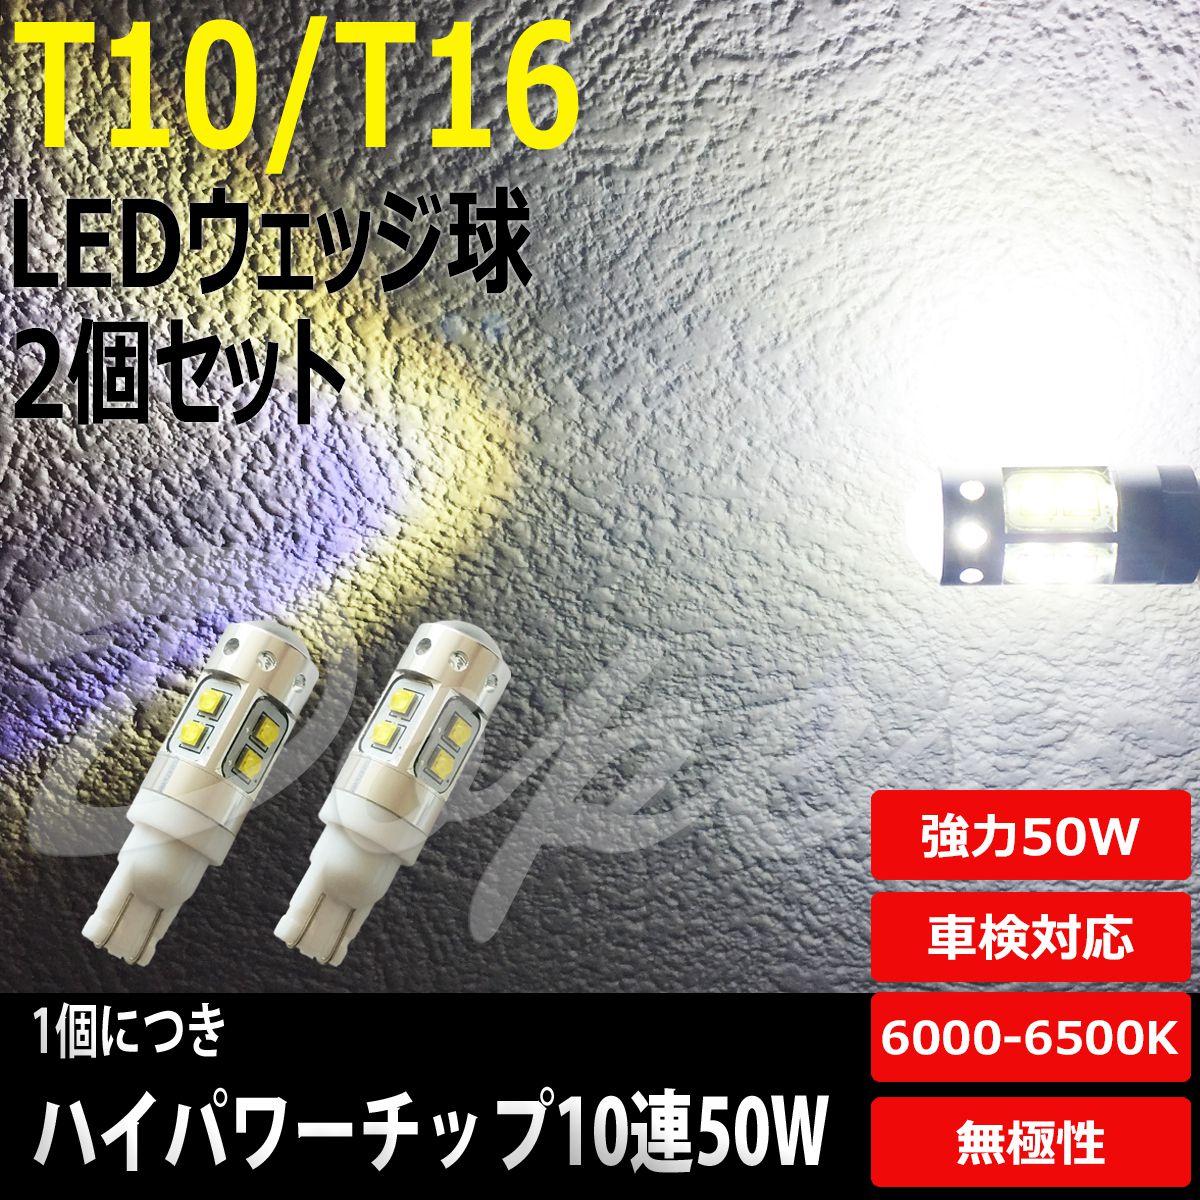 T16 LEDバックランプ モコ MG33S系 H23.2〜 50W バルブ